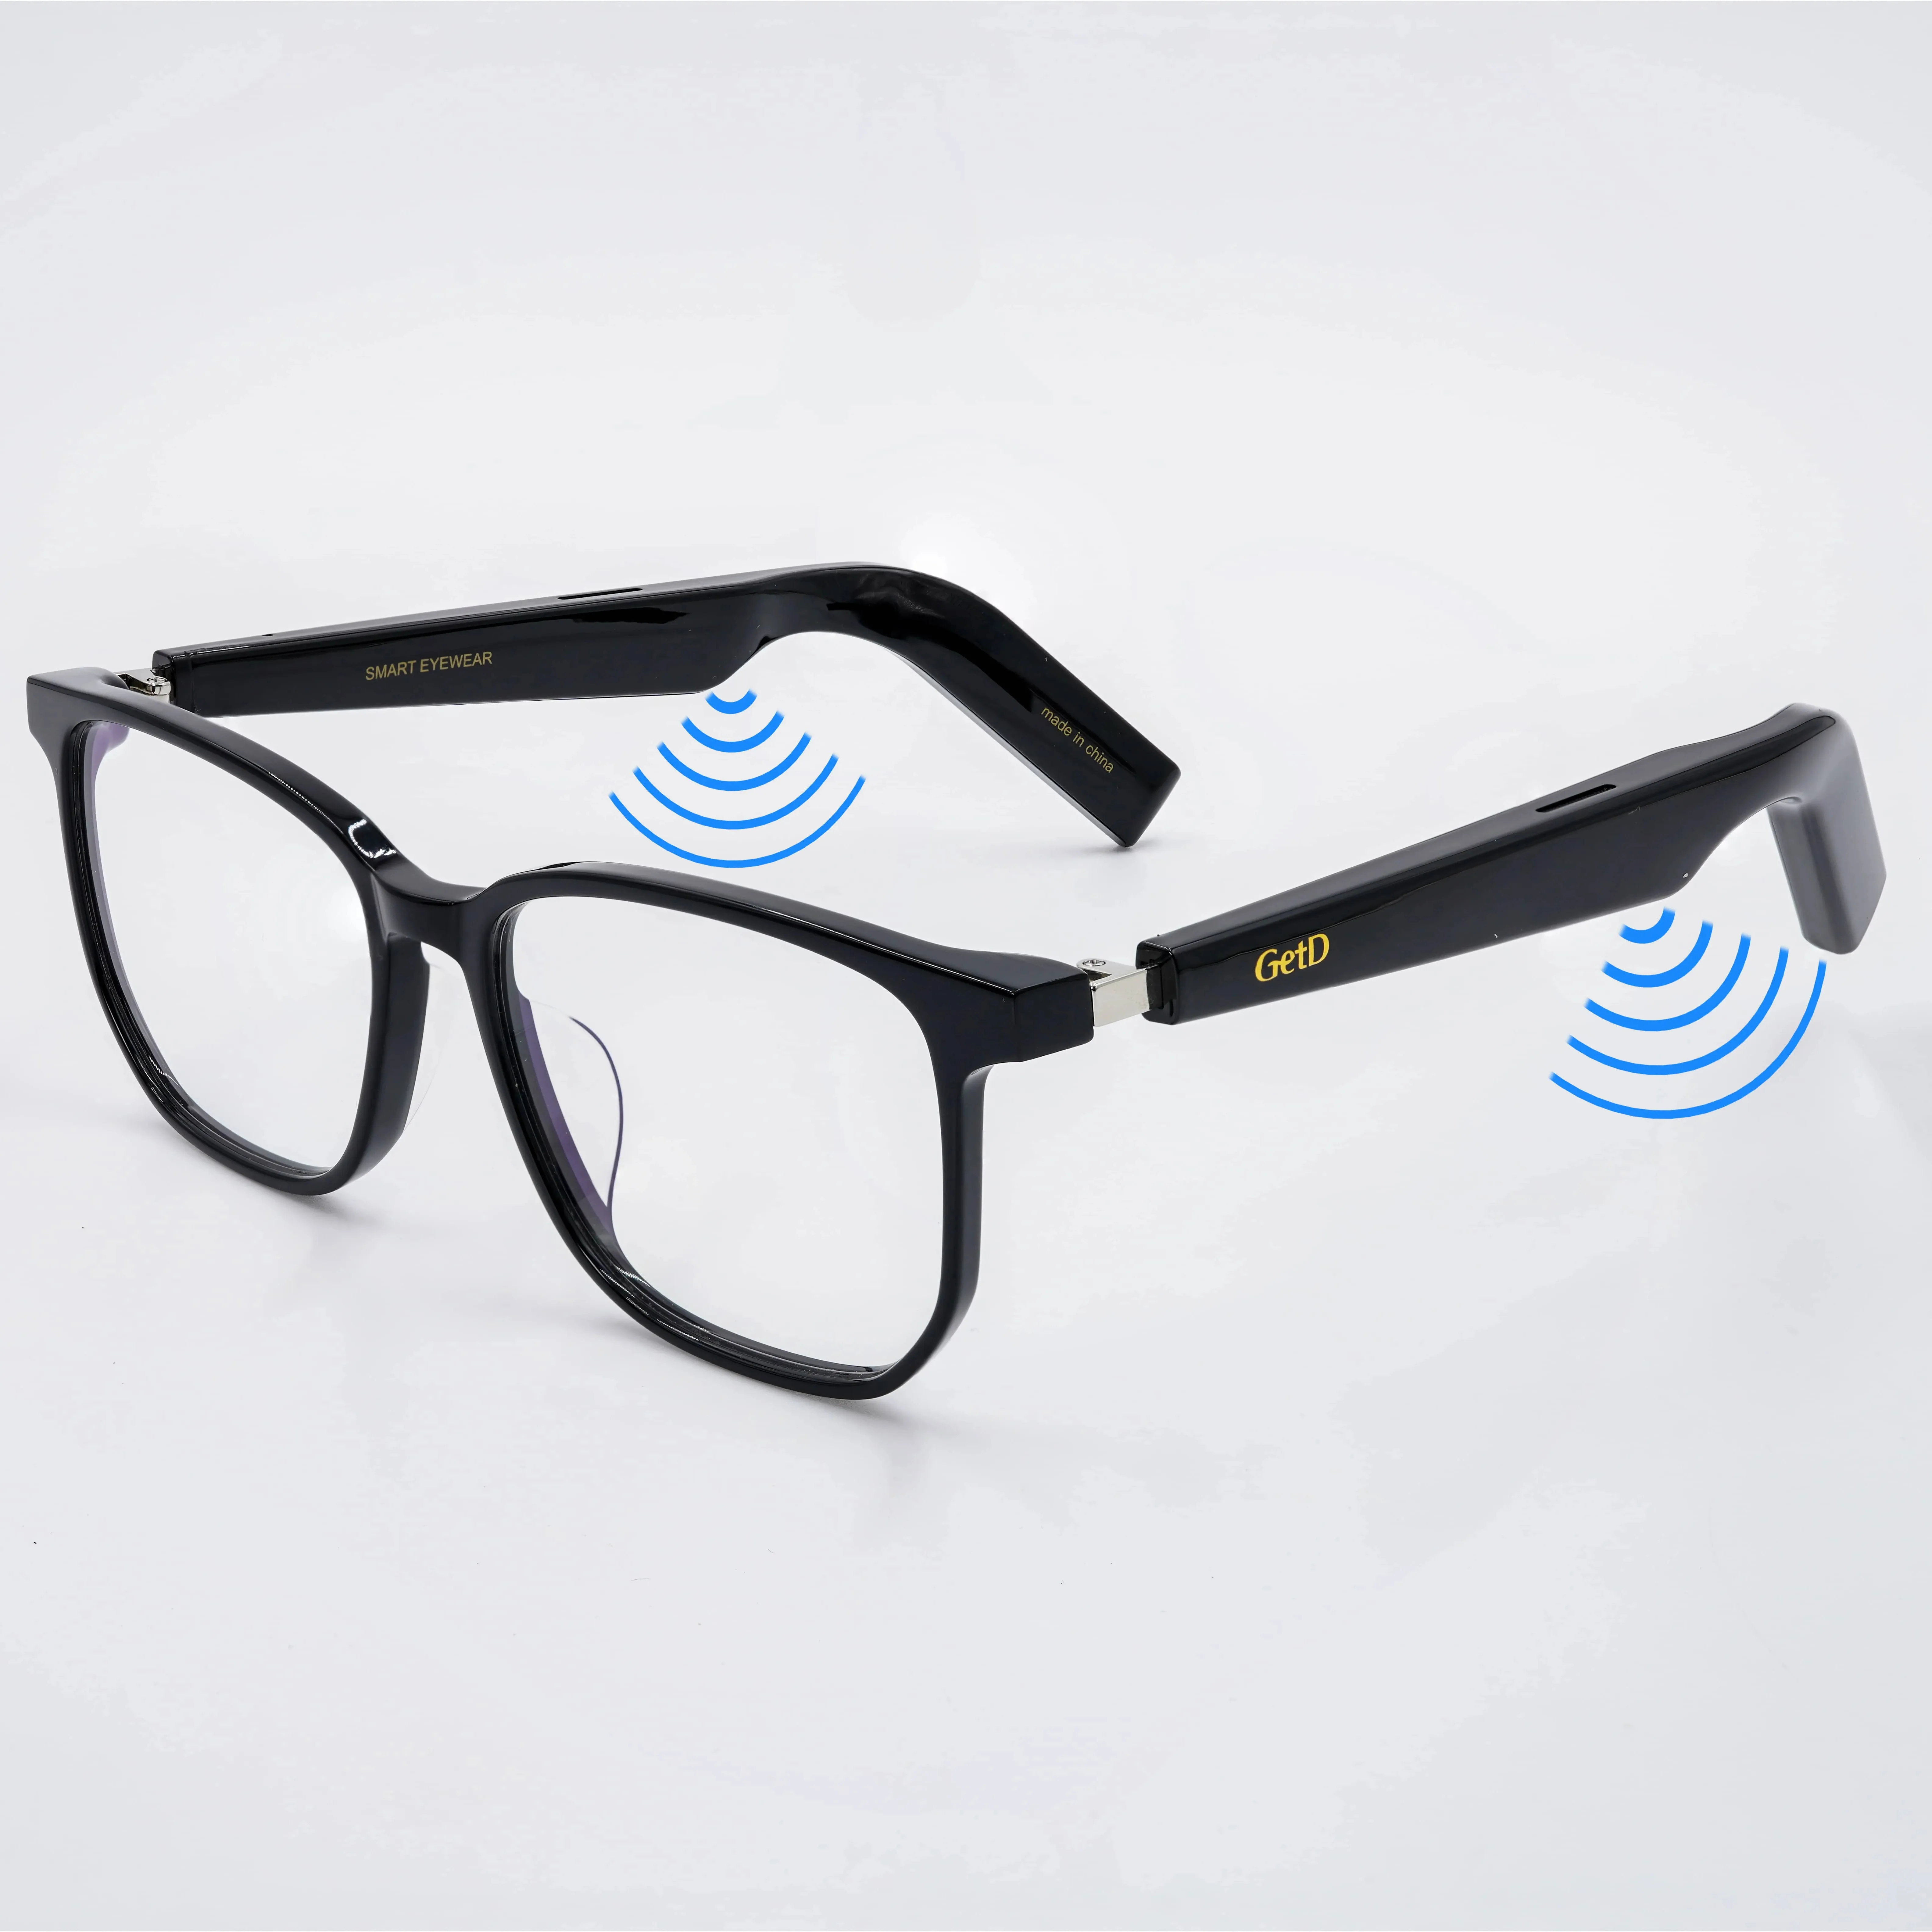 نظارات ذكية تعمل باللمس مزودة بميكروفون نظارات ذكية تعمل باللمس مزودة بالبلوتوث